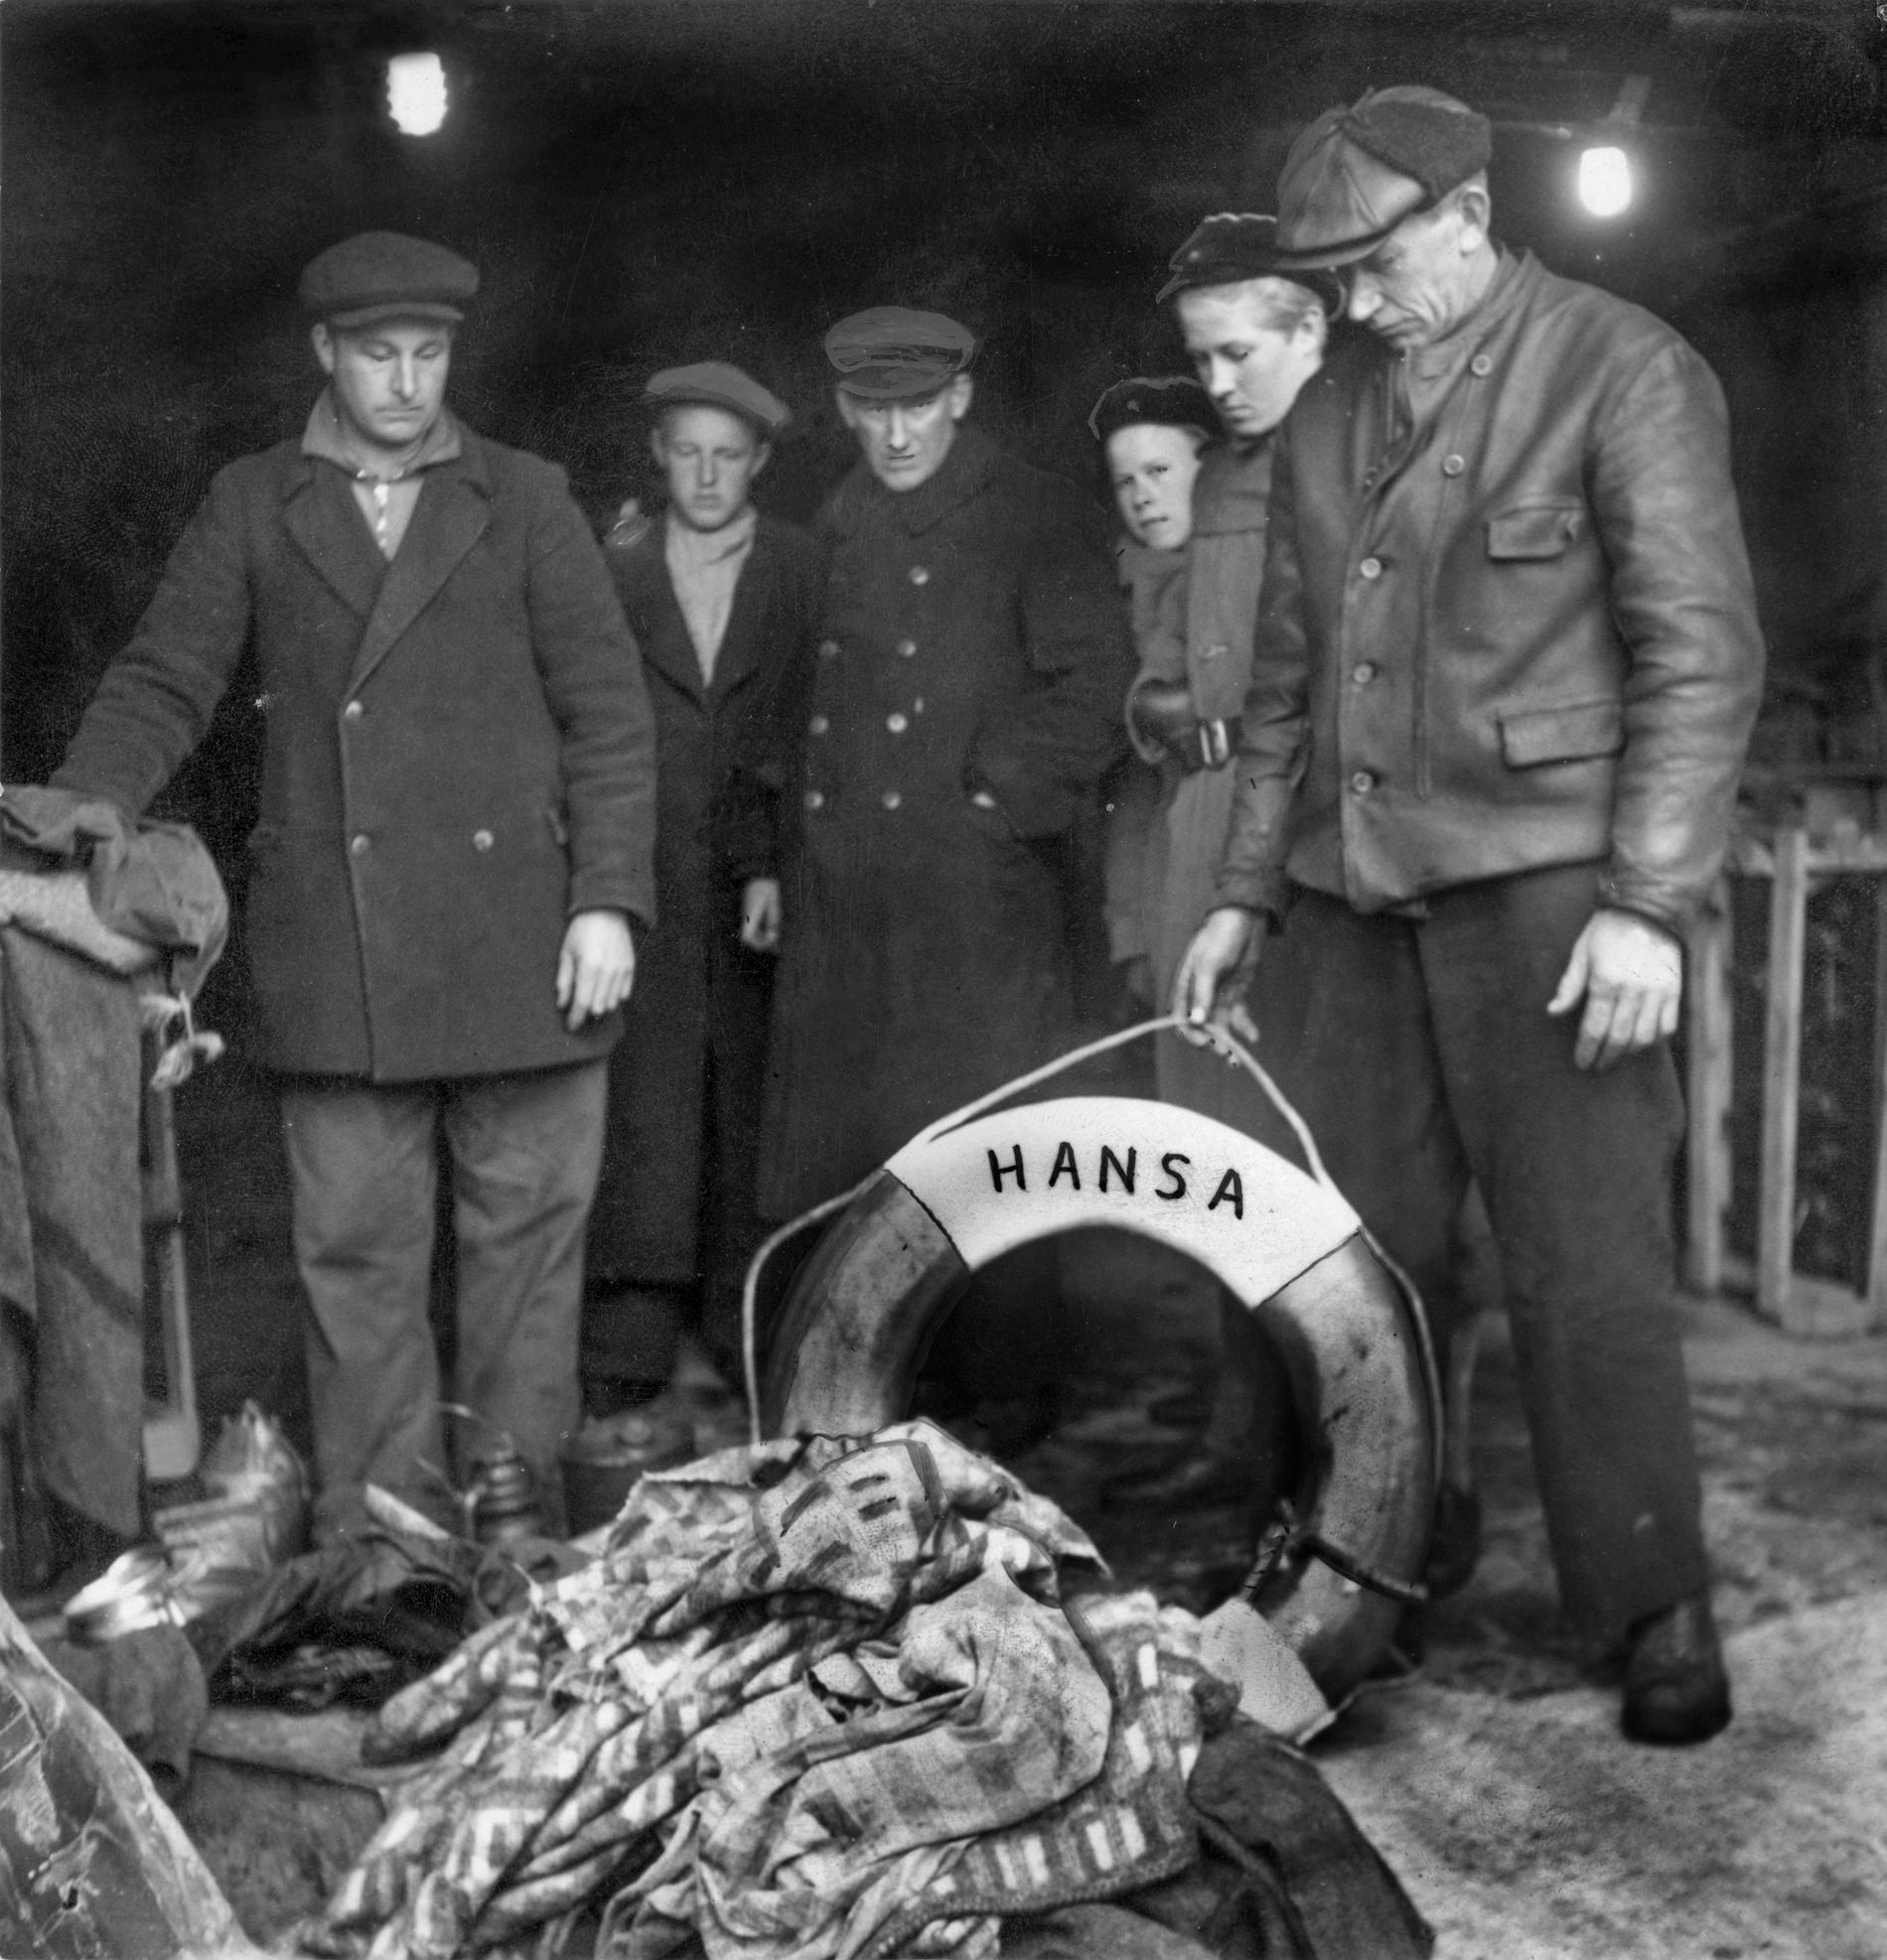 Rester av passagerarfärjan S/S Hansa bestående av en livboj, filtar och klädespersedlar visas upp i Visby hamn 24:e eller 25:e november 1944. Arkivbild.